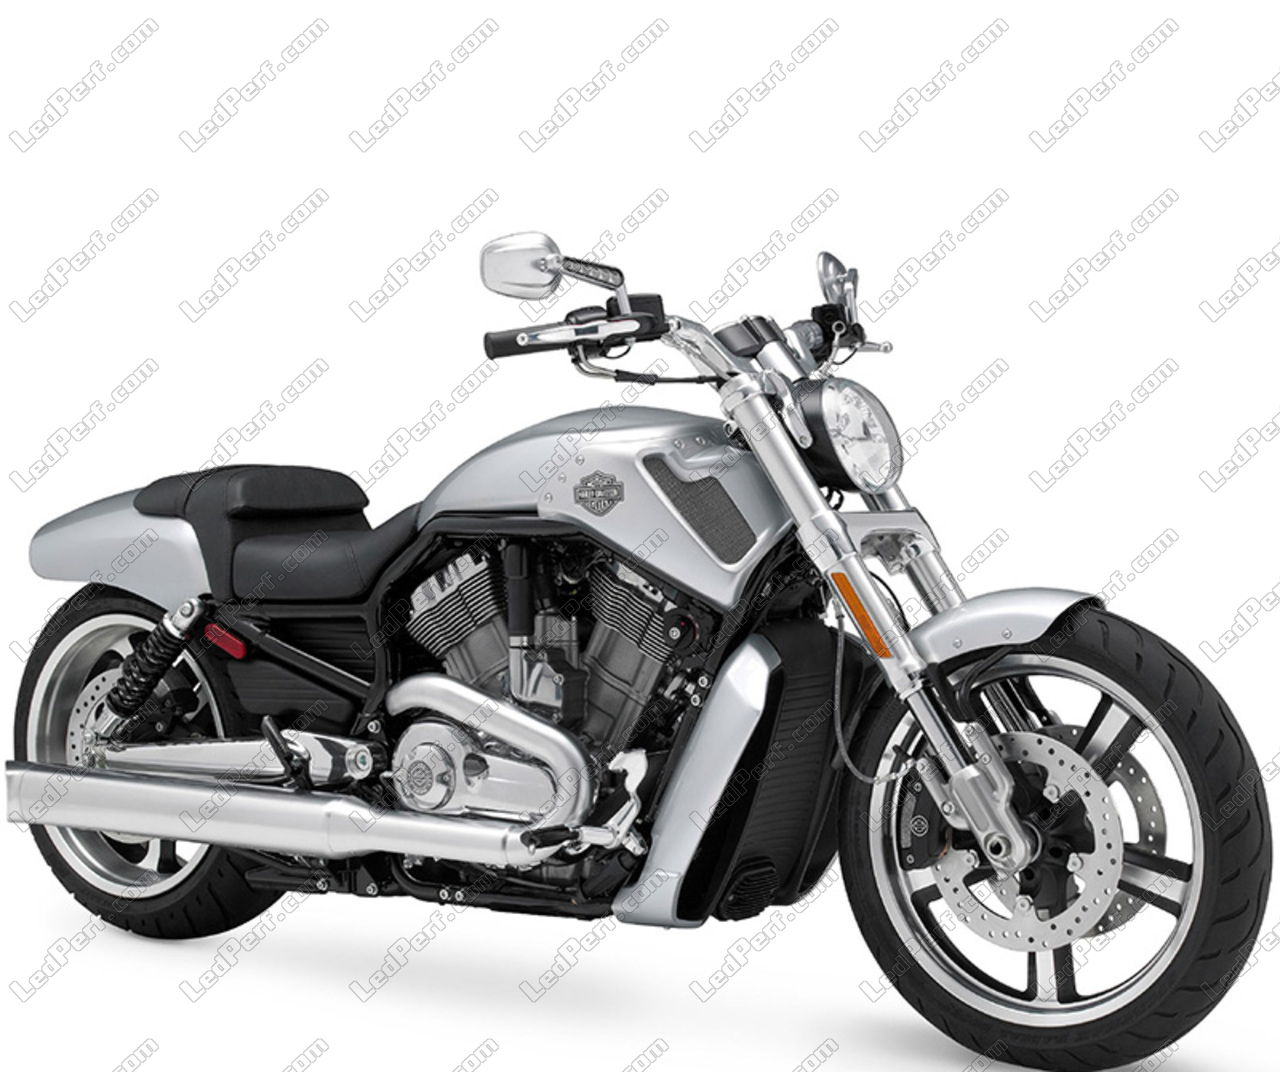 Led Nebelscheinwerfer Mit Grosser Reichweite Fur Harley Davidson V Rod Muscle 1250